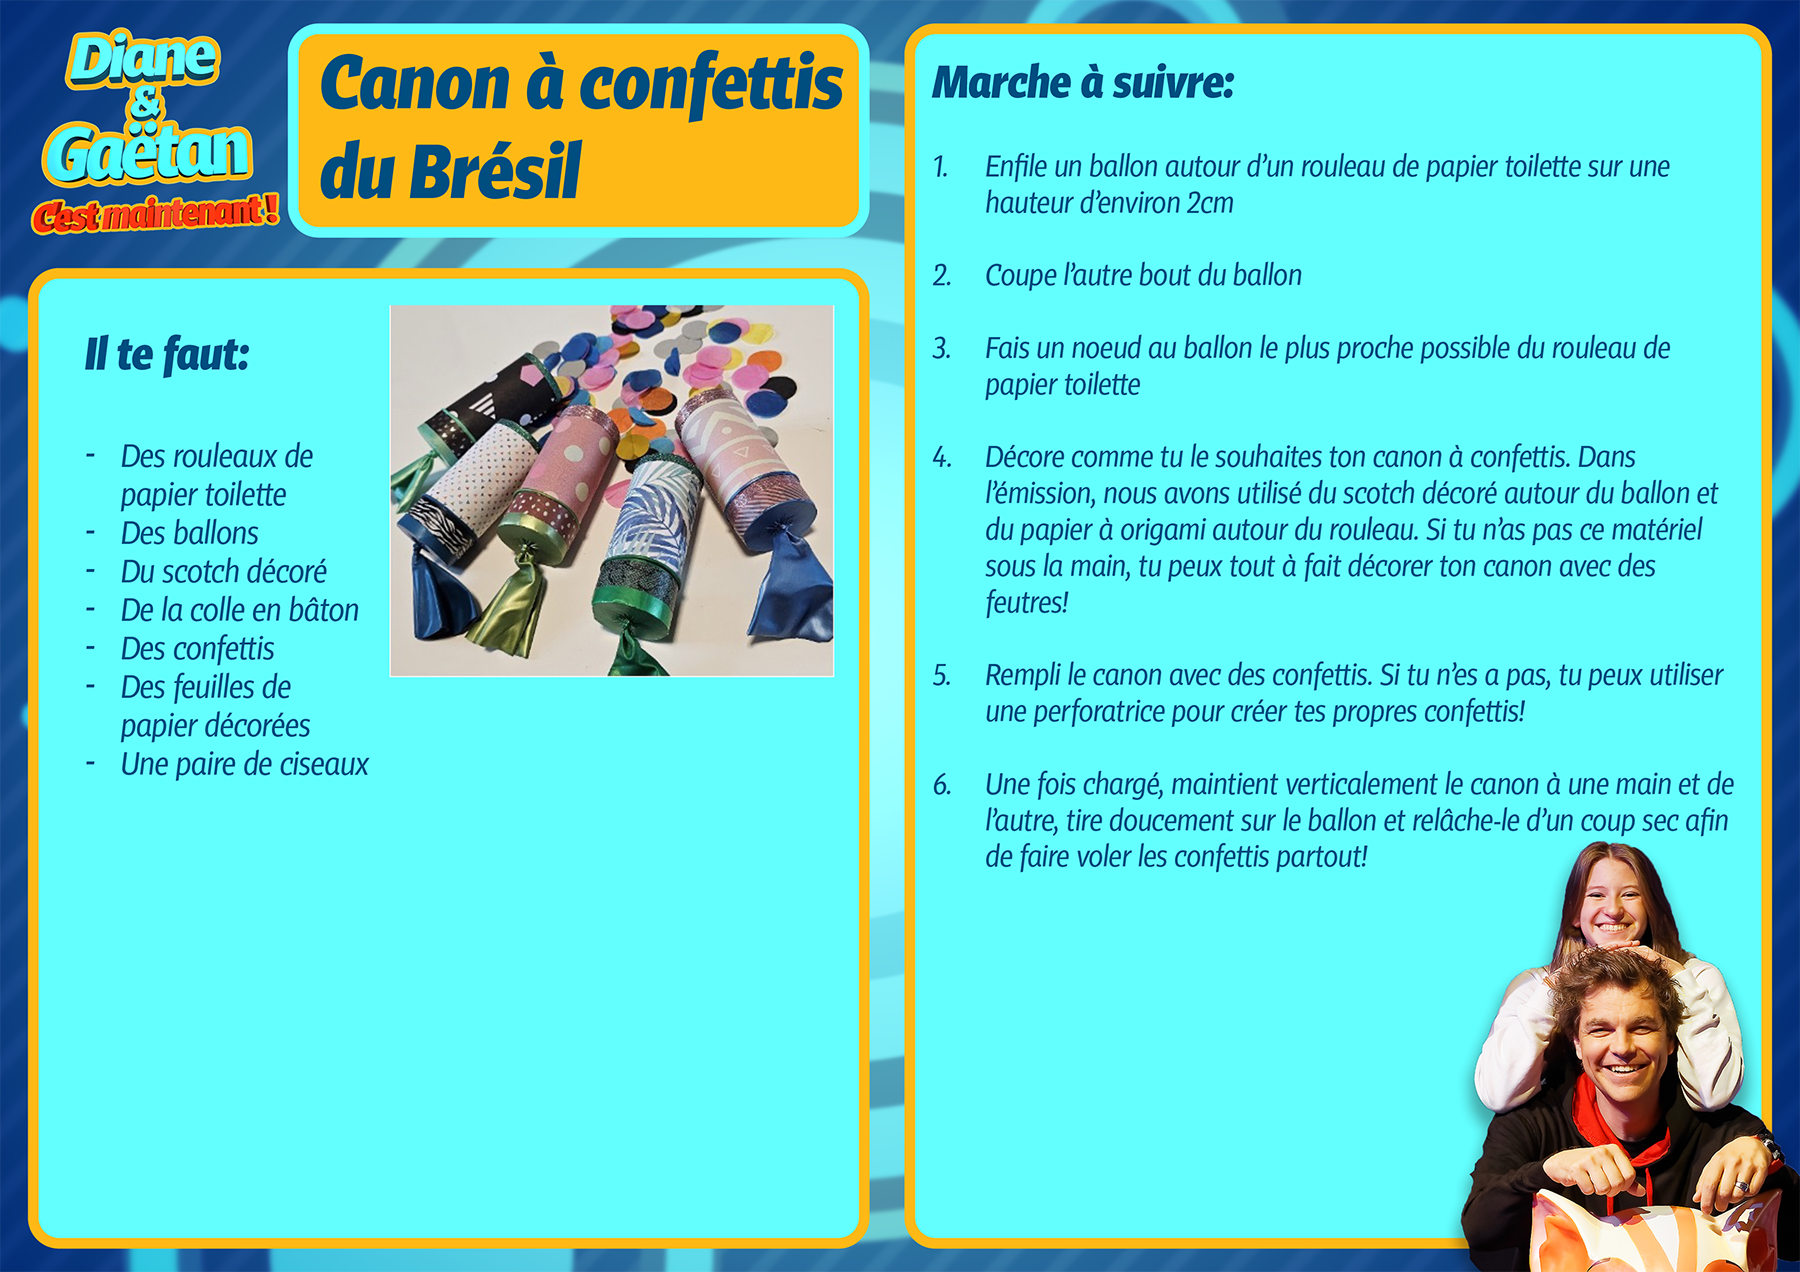 Canon à confettis du Brésil [RTS]